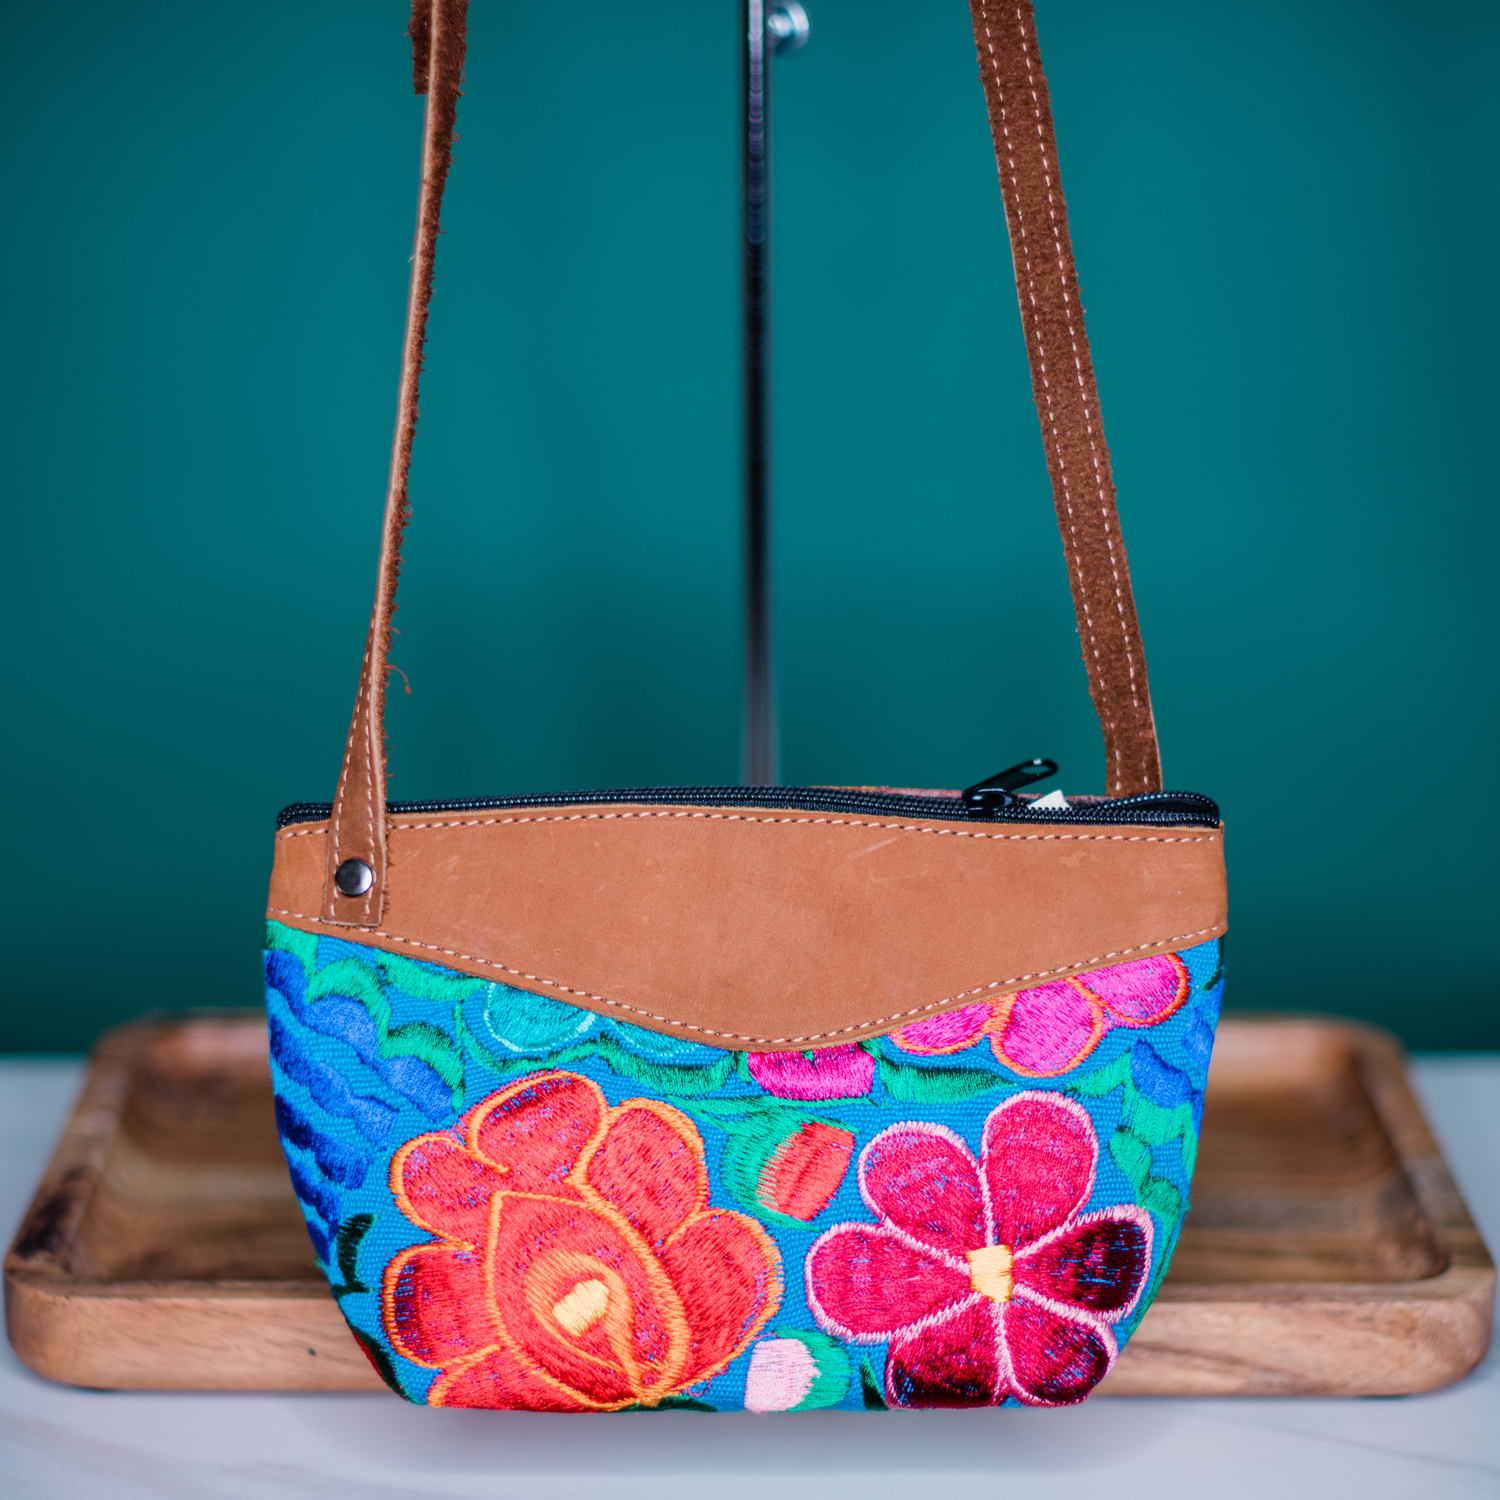 Crochet Strawberry Crossbody Bag Crochet Strawberry Handbag Cute Crossbody  Bag - Etsy | Tasche häkeln, Häkeln, Handarbeit